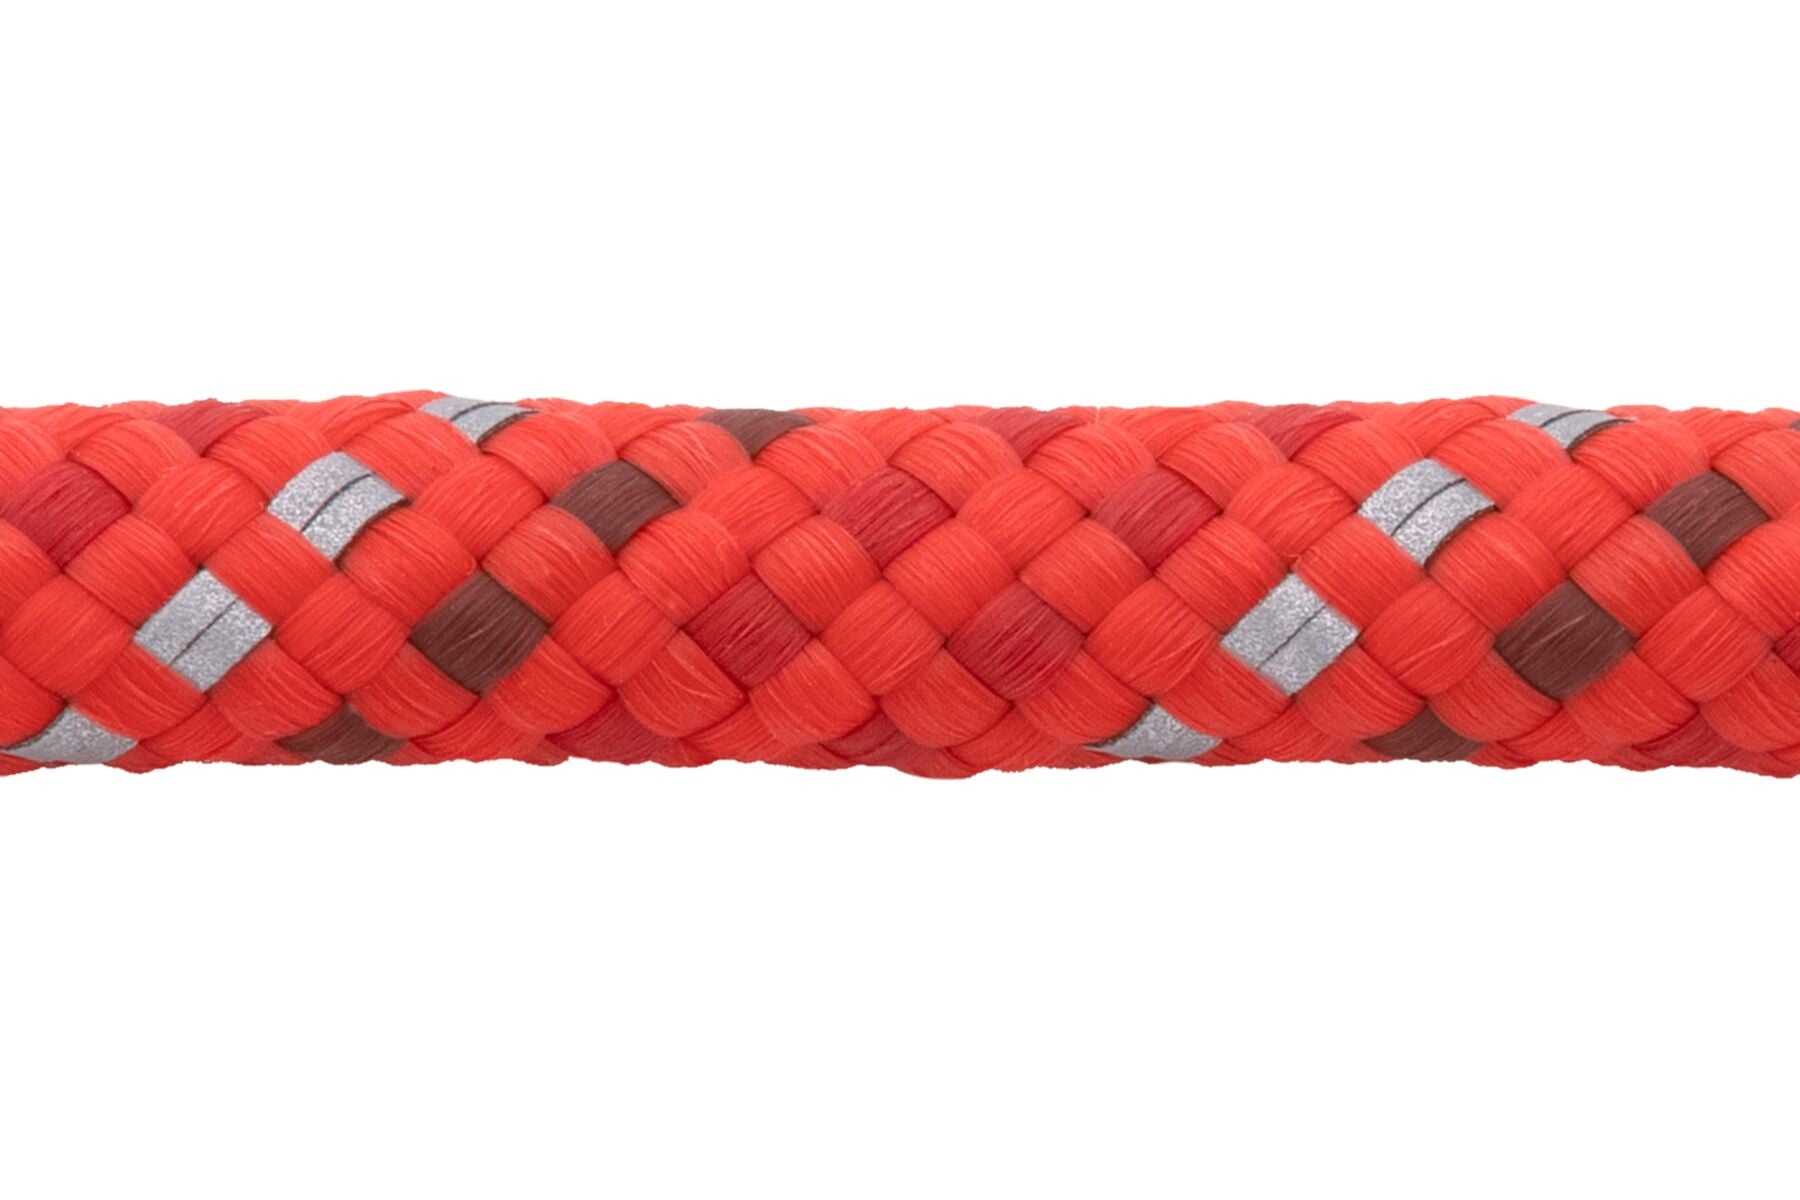 Knot-a-Collar® Collar de Cuerda para Perros- Rojo (Red Sumac) - Ruffwear